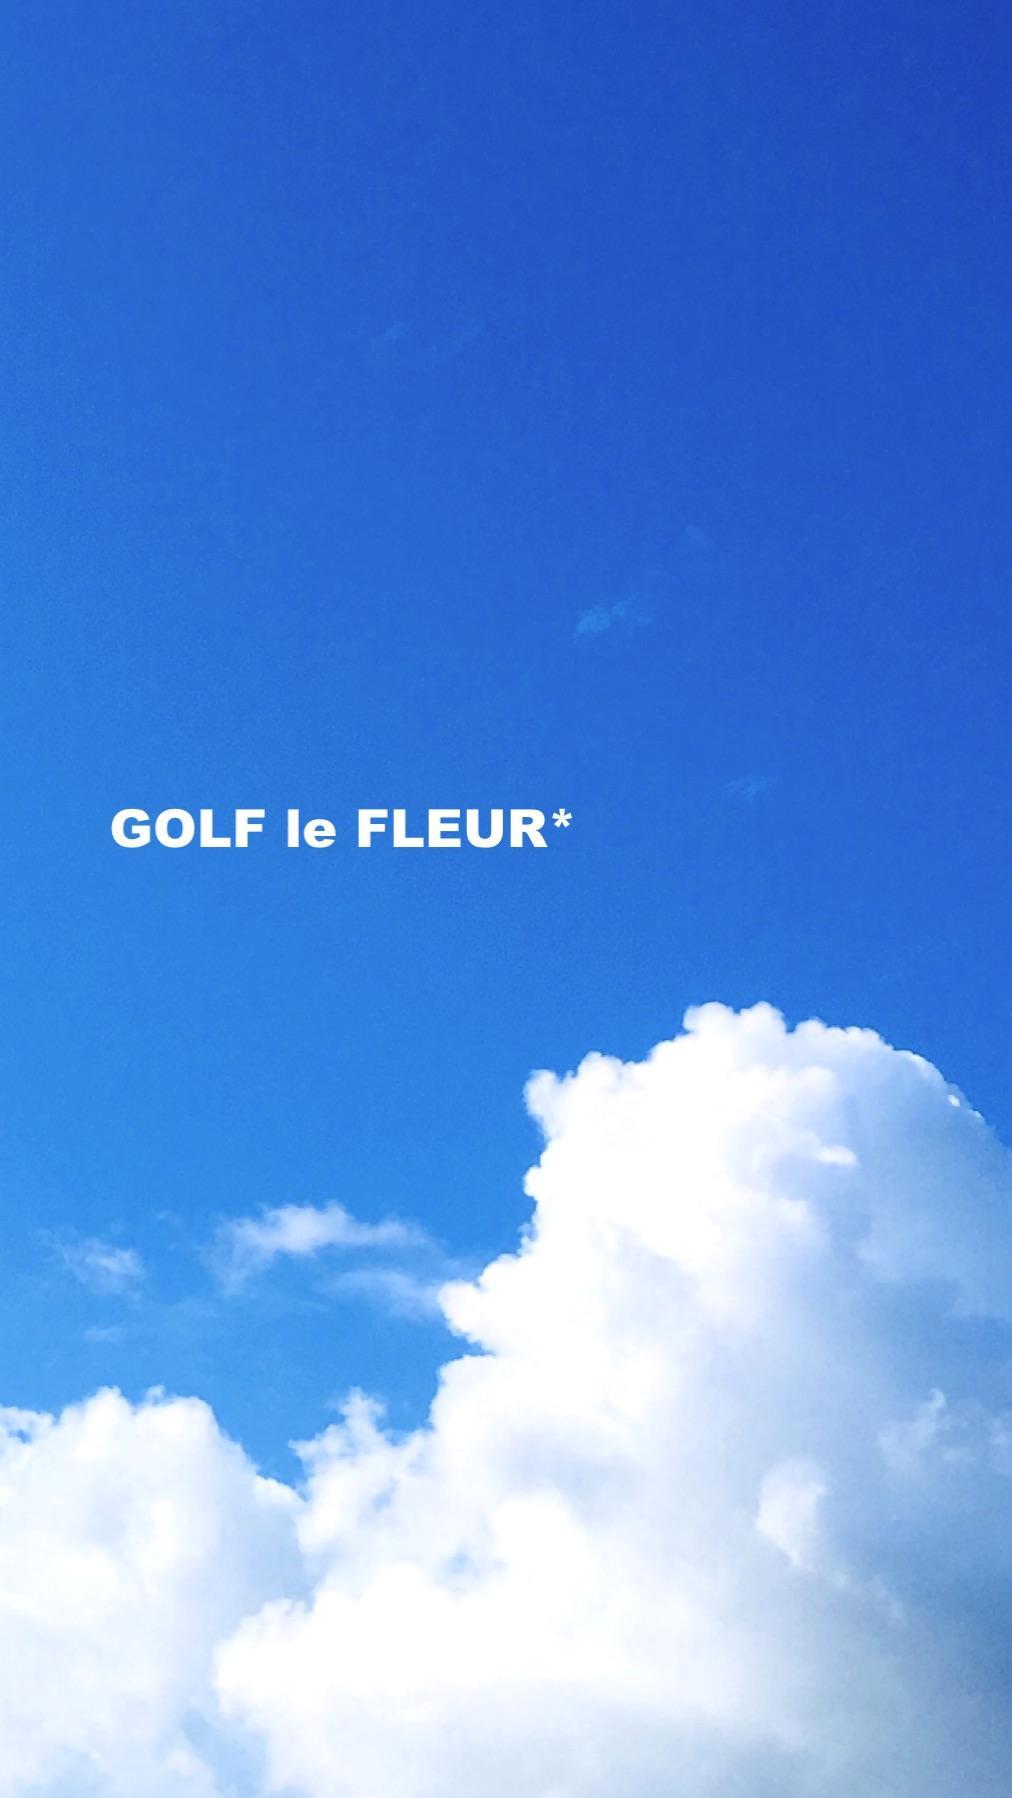 Golf Le Fleur Wallpapers - Top Free Golf Le Fleur Backgrounds